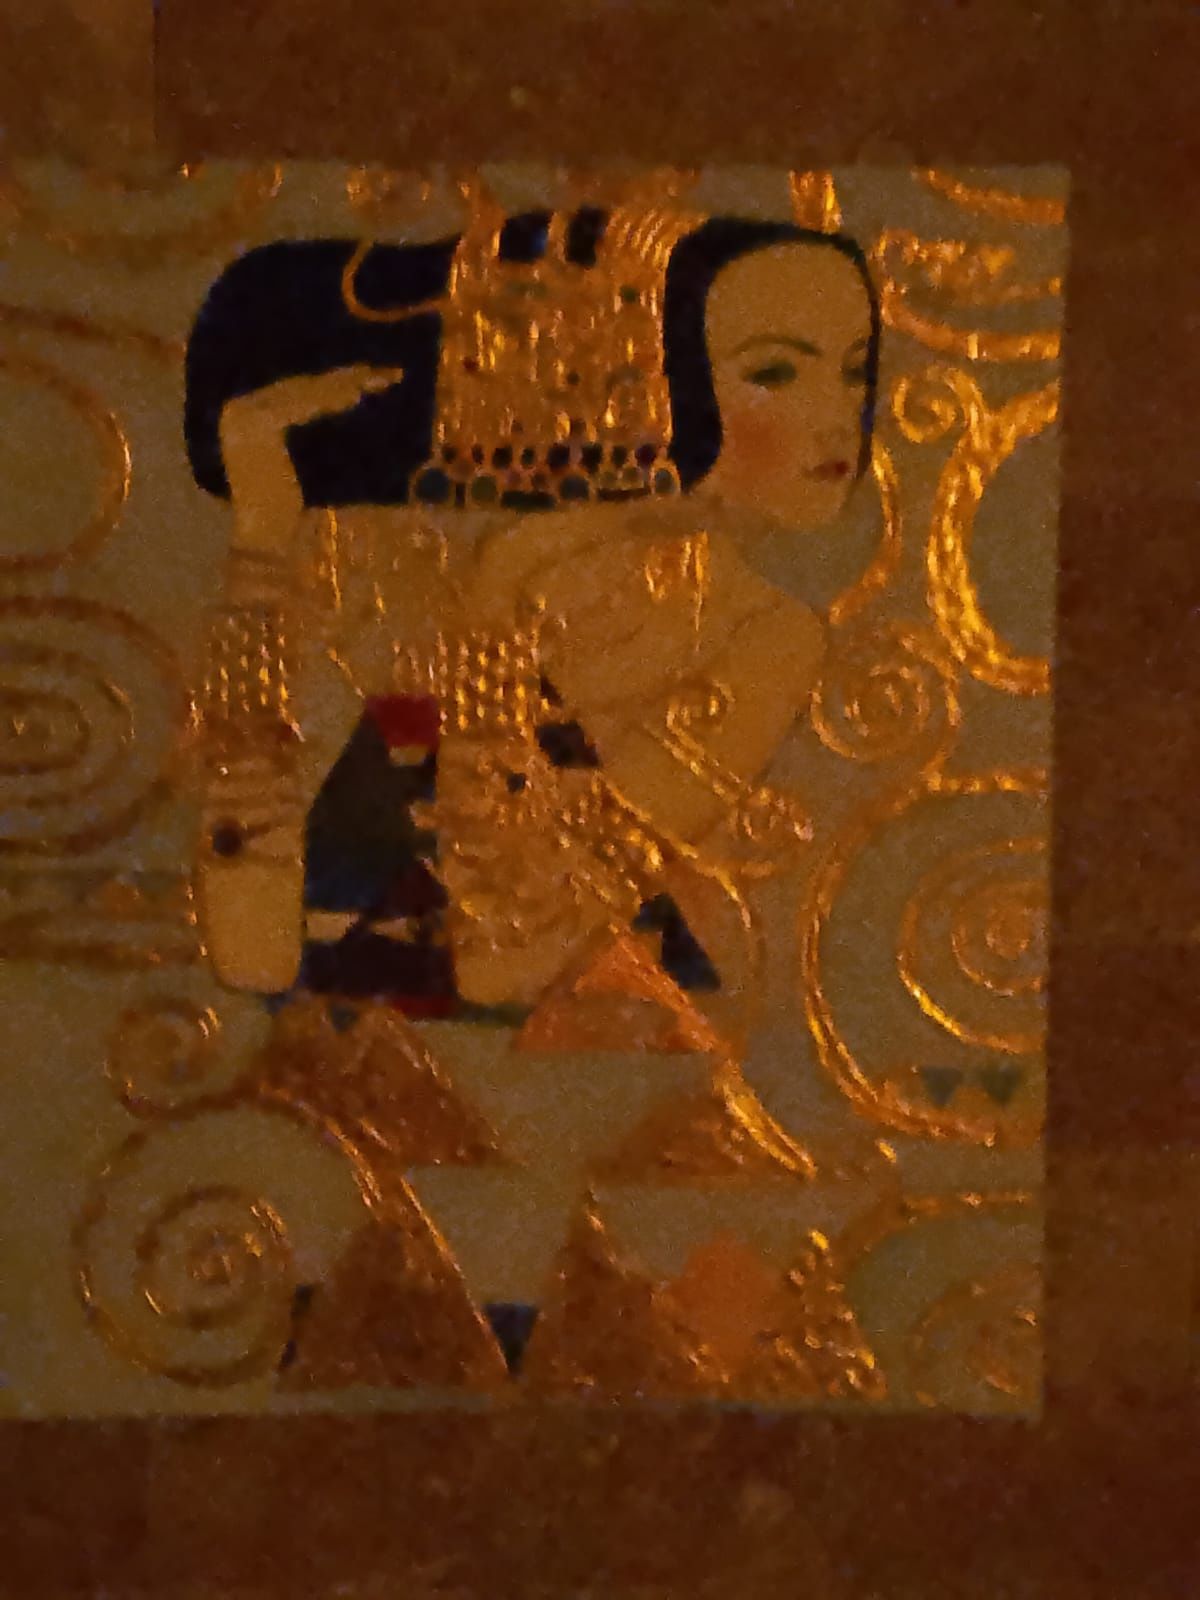 Reproducere după pictorul Gustav Klimt,ulei pe panza